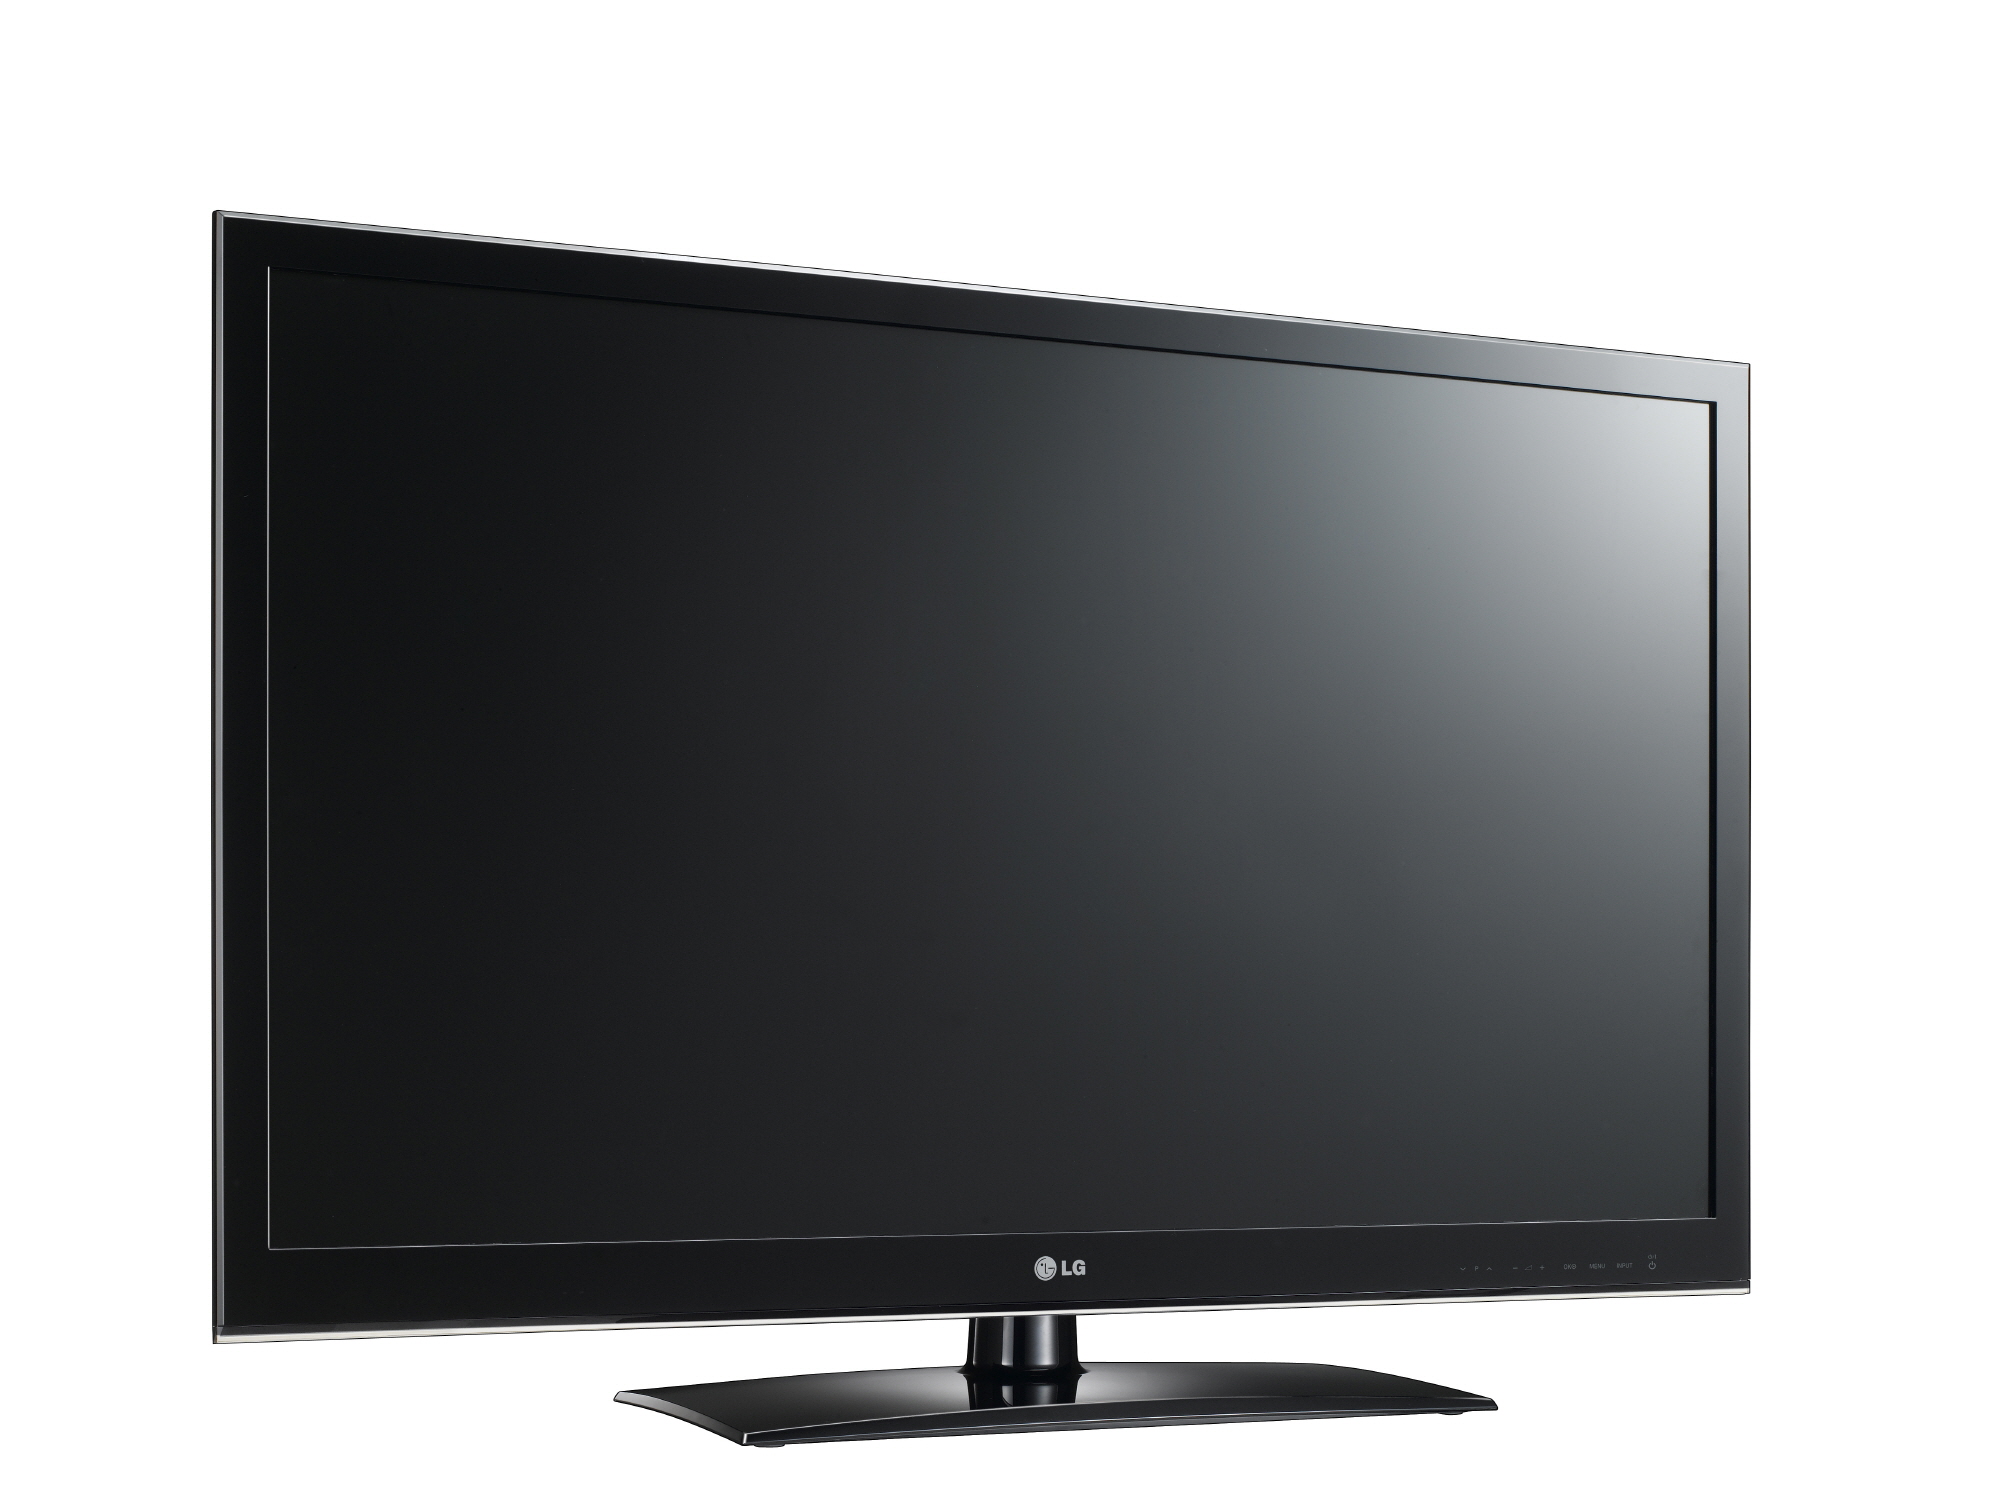 Телевизоры лджи отзывы. Телевизор LG 32lv3500. LG 42lv4500. Телевизор LG 106см. LG 42ld550.